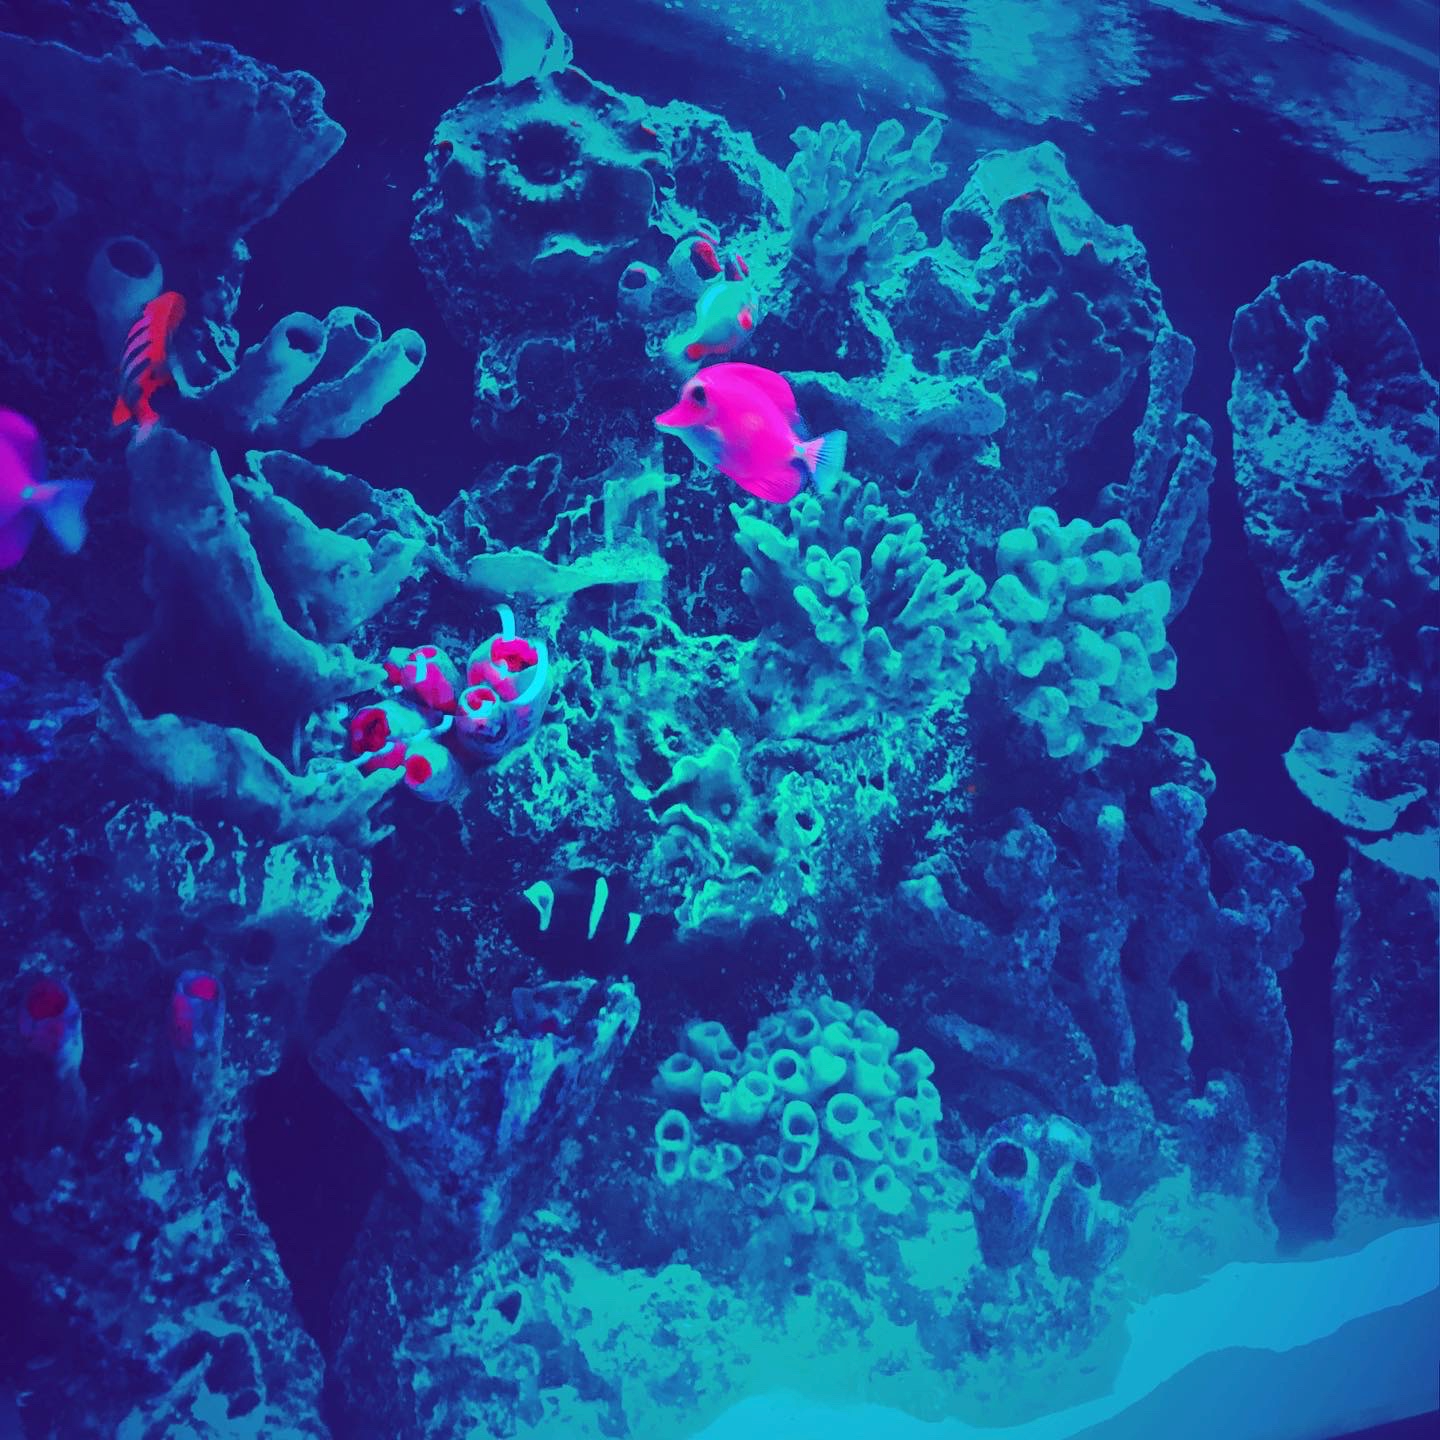 Closeup of fish aquarium, including coral plants